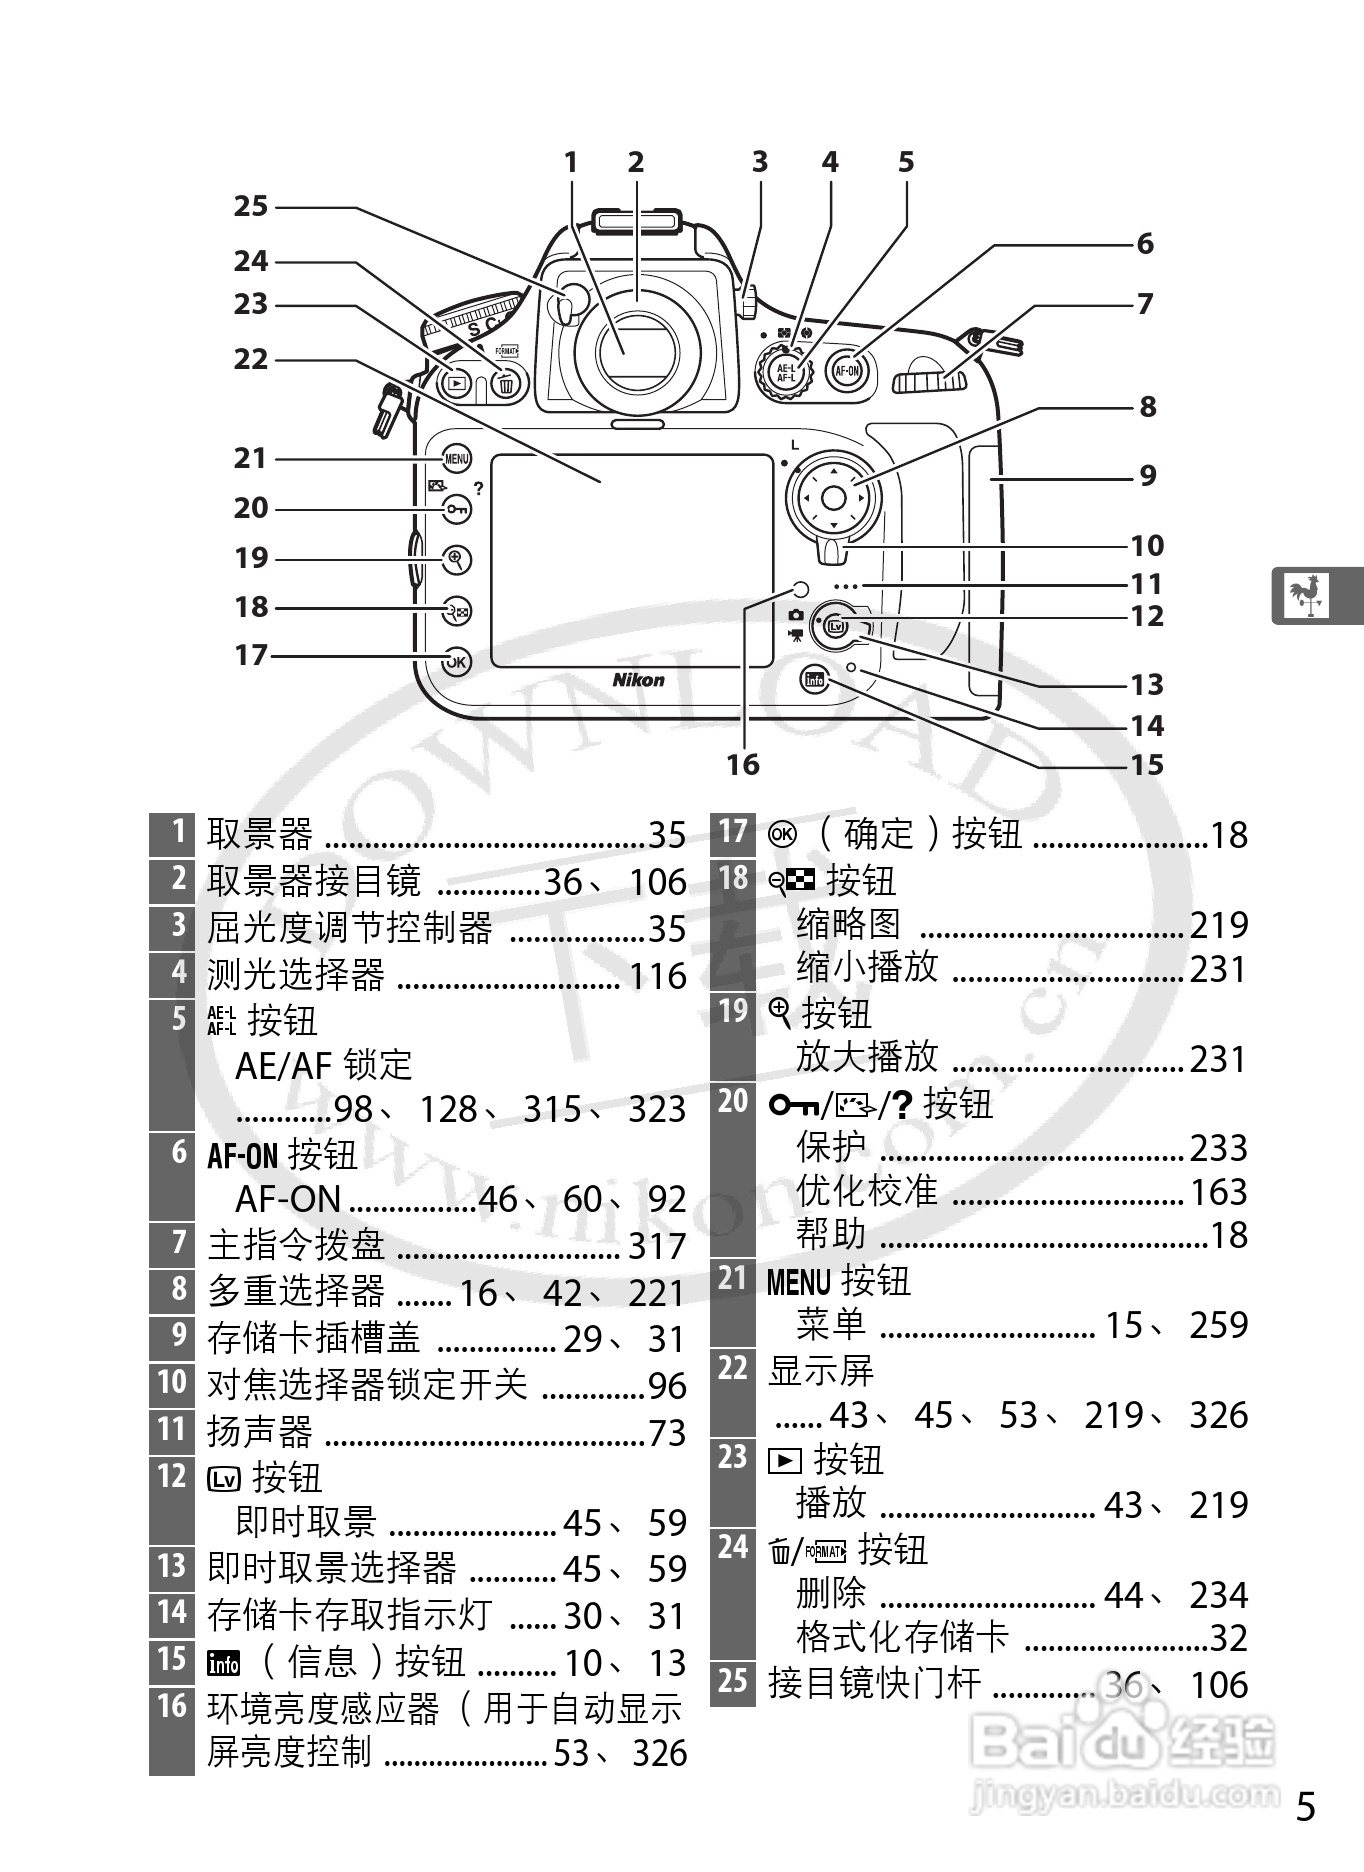 本篇为《尼康d800e数码相机使用说明书,主要介绍该产品的使用方法